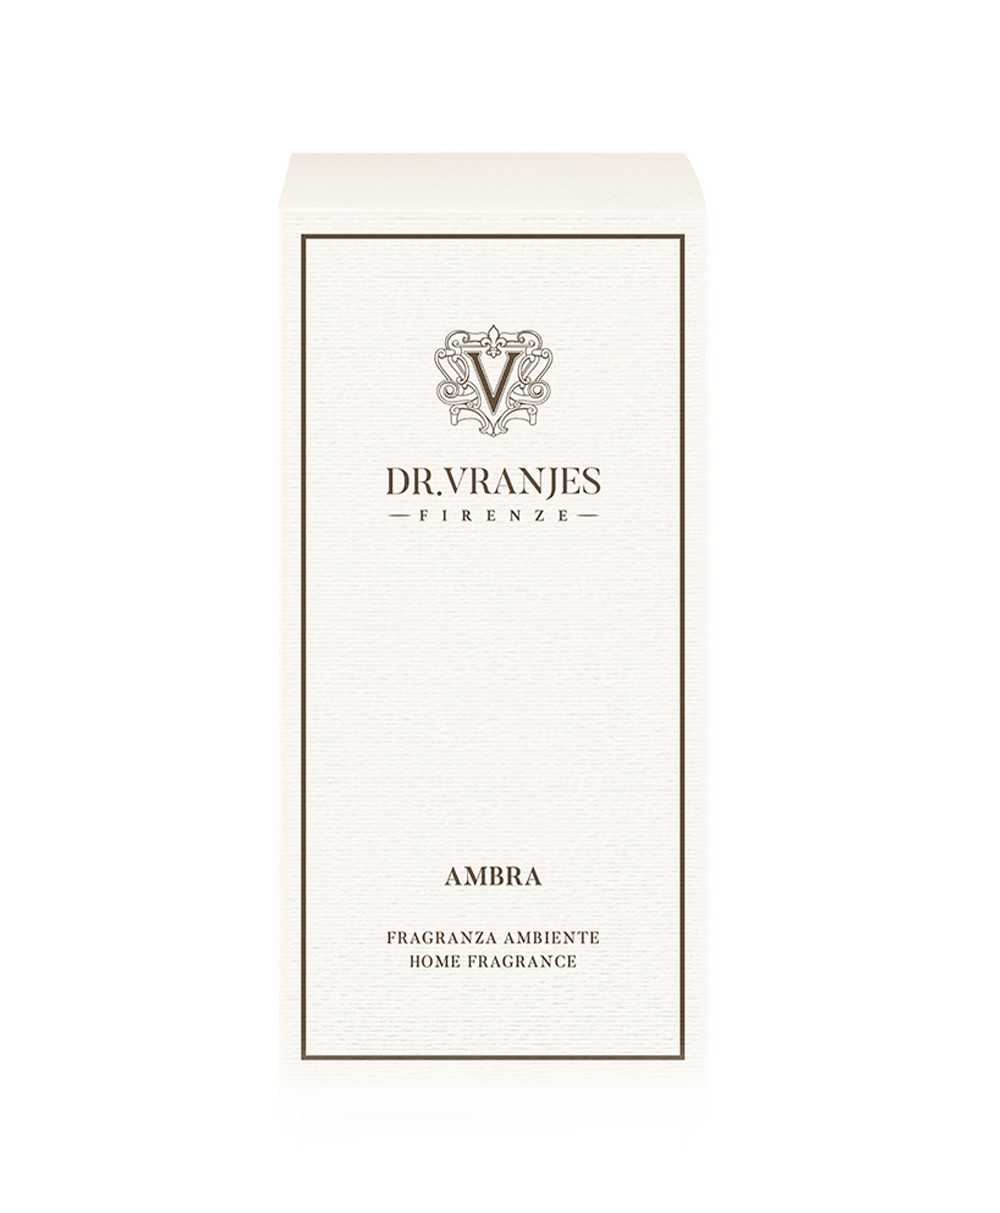 Ambra Verpackung aus der Home Fragrance Collection von Dr. Vranjes Firenze im RAUM Conceptstore